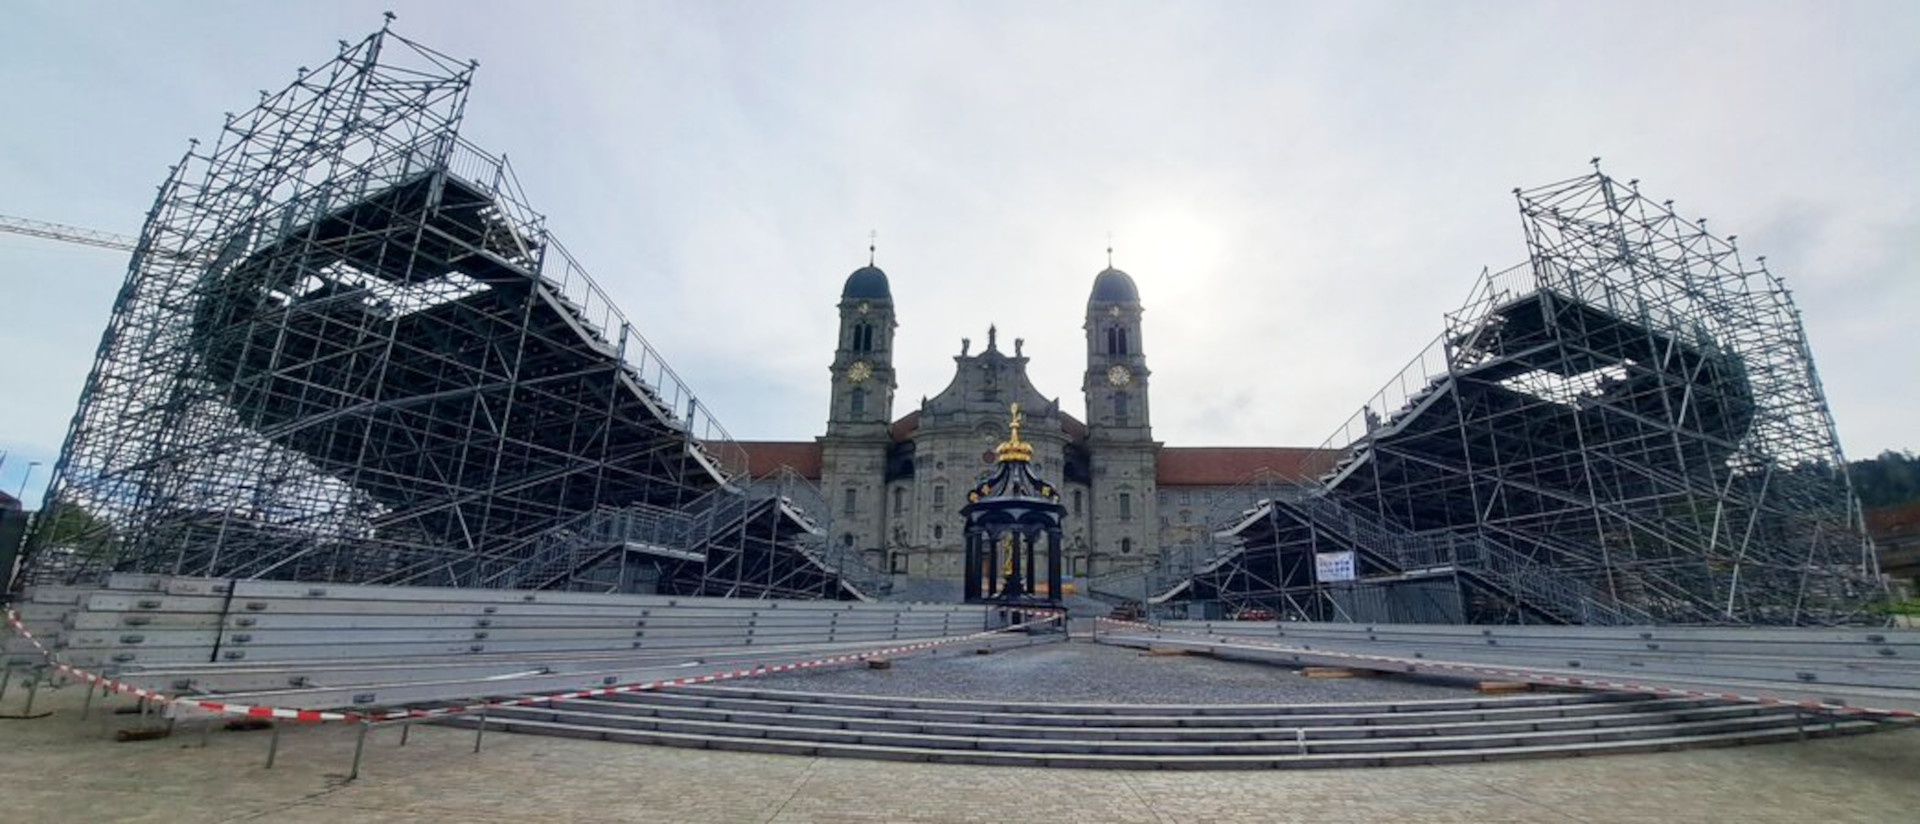 Die riesigen Zuschauertribünen für das Welttheater auf dem Einsiedler Klosterplatz stehen schon